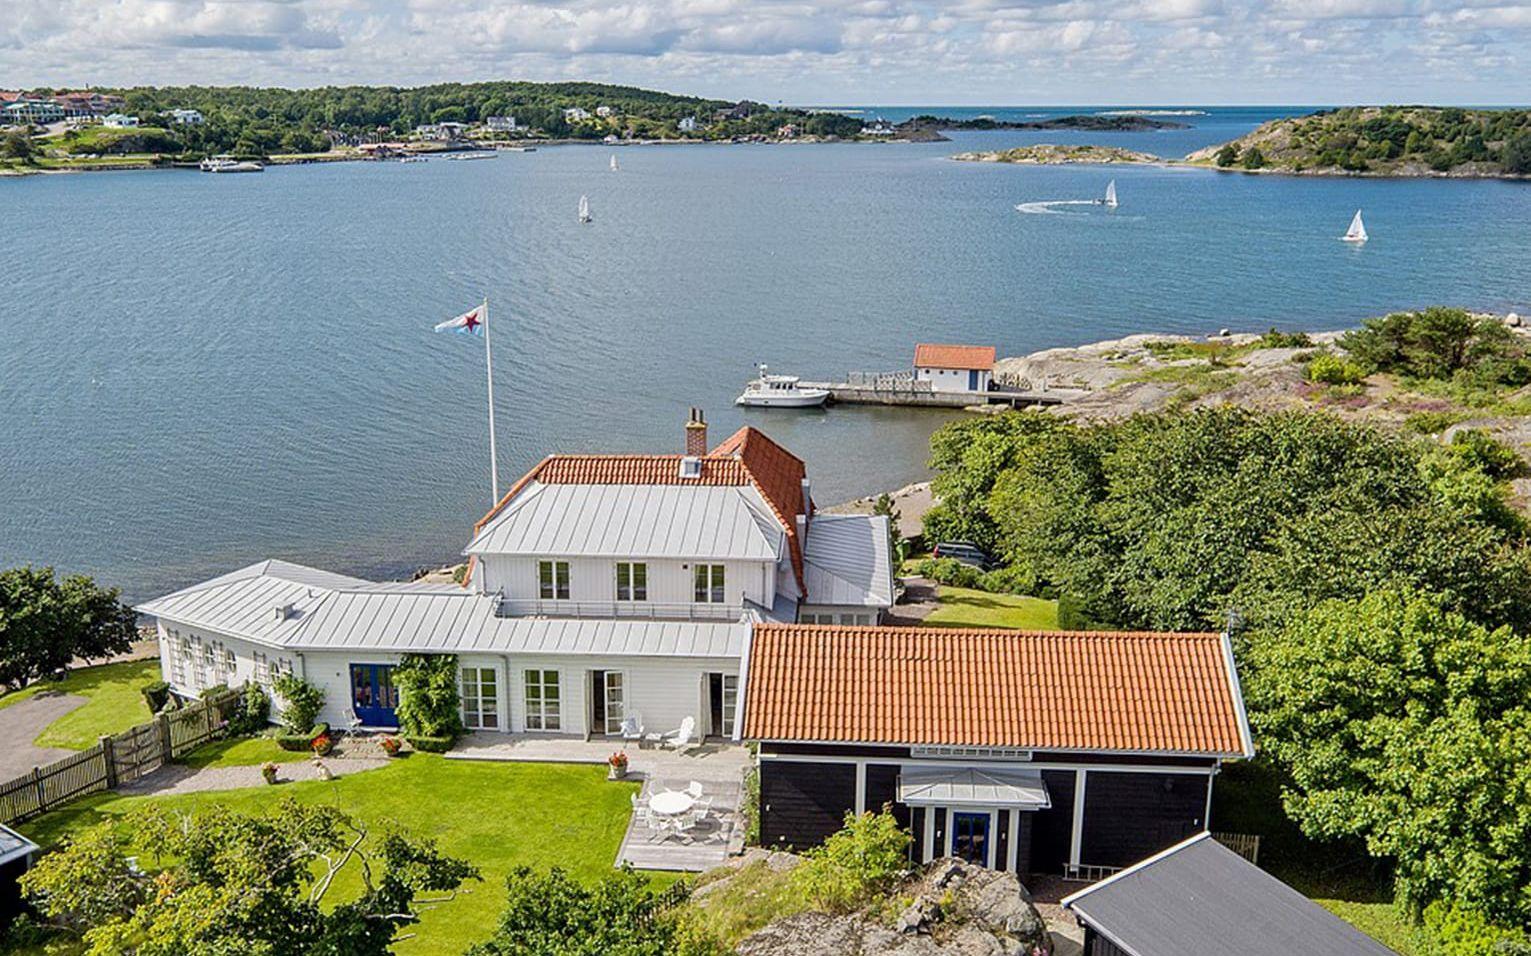 Villan är till salu för 32 miljoner kronor. Foto: Fredrik Karlsson/SE360